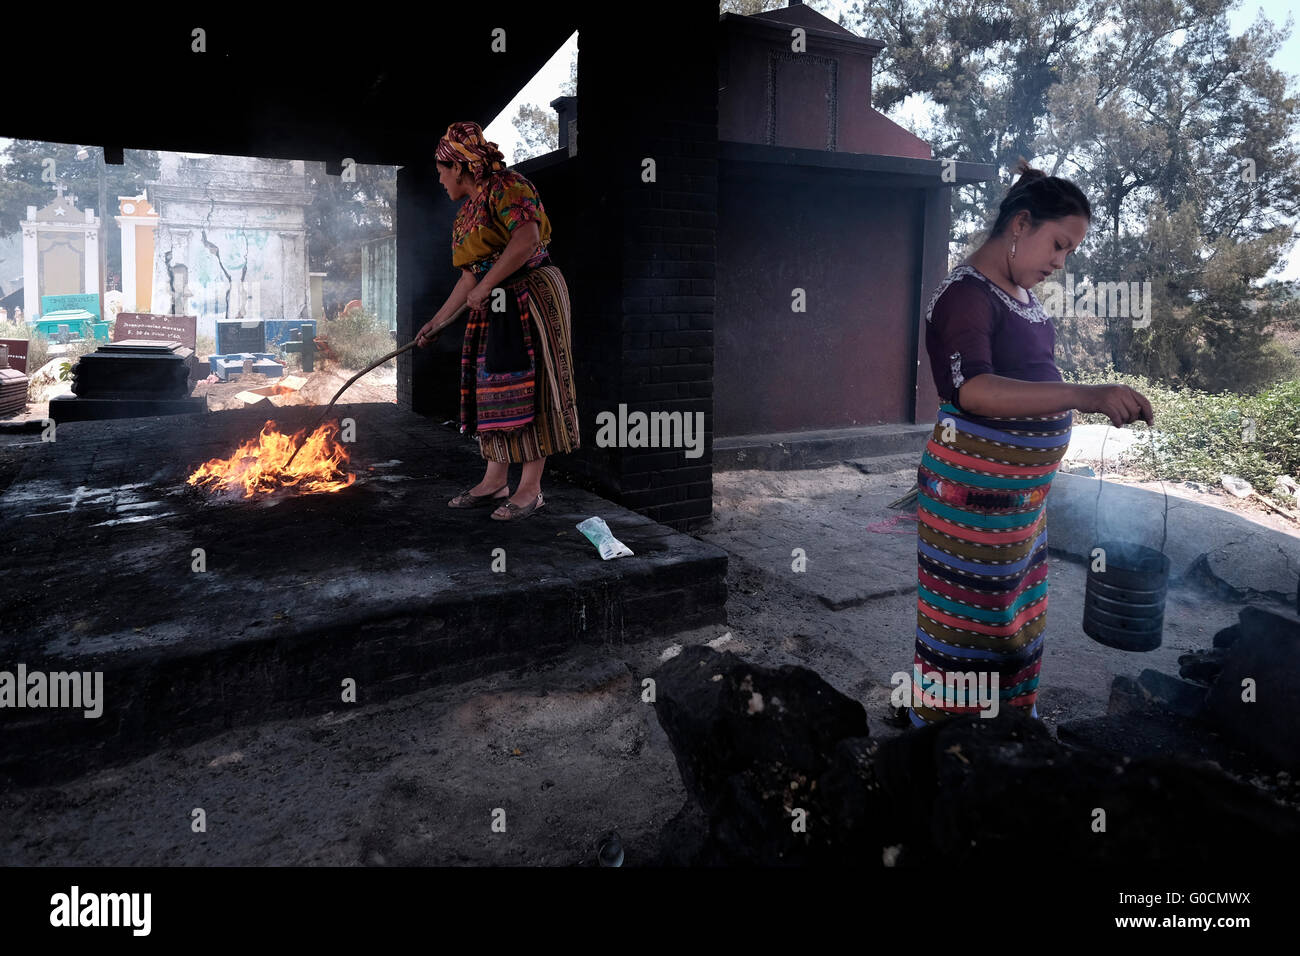 Femme locale effectuer une cérémonie maya K'iche encensoirs avec l'aide d'encens fumant au cimetière de Chichicastenango également connu sous le nom de Santo Tomás Chichicastenango une ville dans le département de Guatemala El Quiché, connu pour sa culture Maya Kiche traditionnels. Banque D'Images